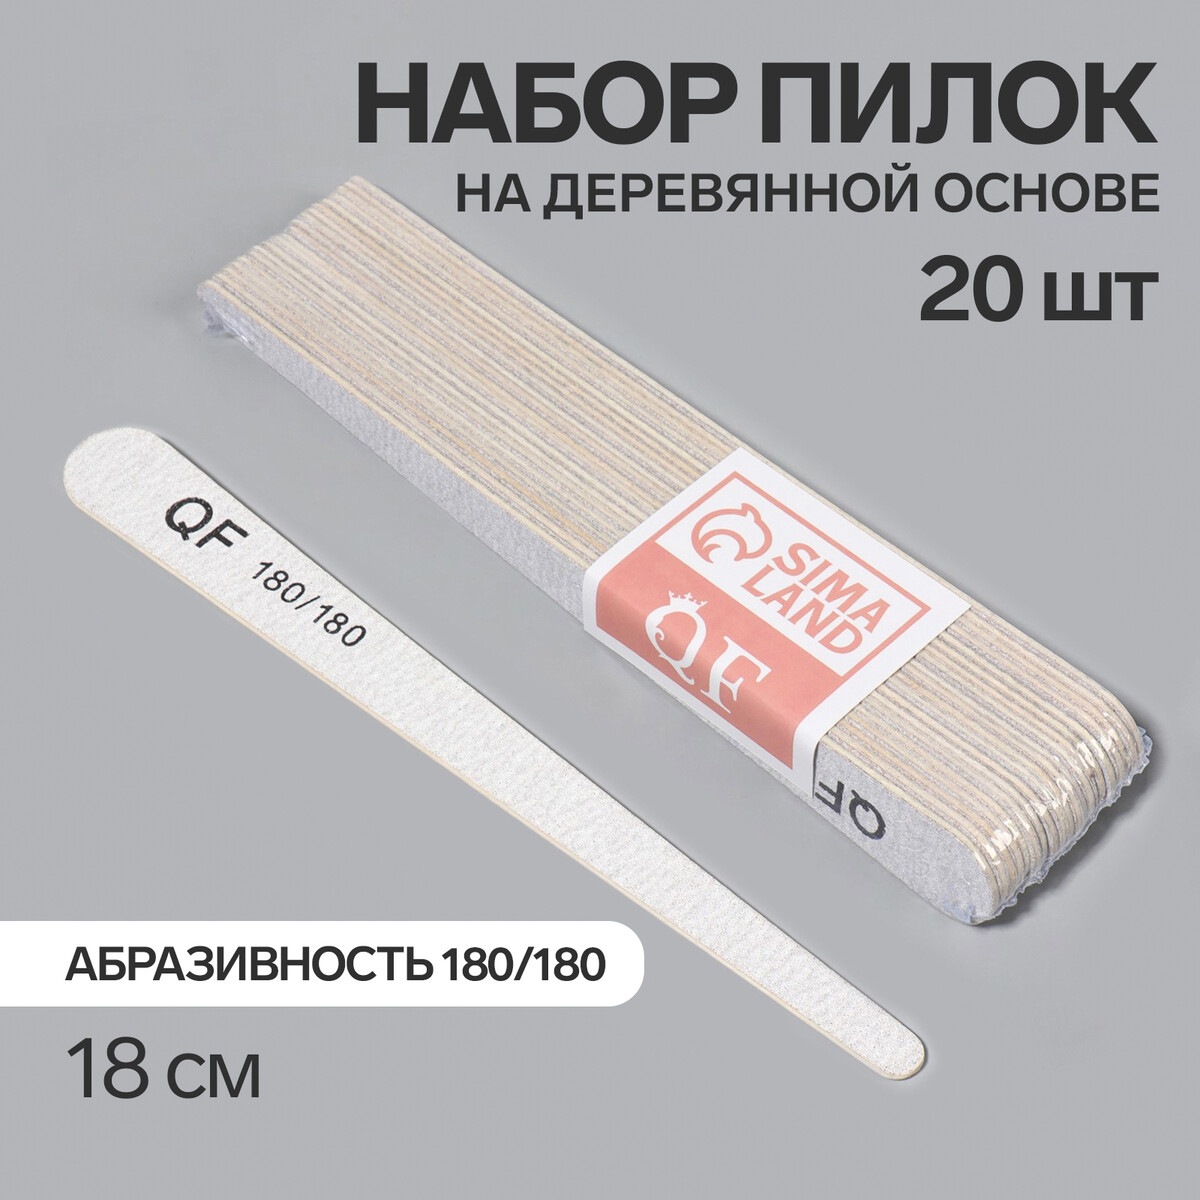 Пилка-наждак, набор 20 шт, деревянная основа, абразивность 180/180, 18 см, цвет серый палка основа для макраме деревянная без покрытия d 1 5 × 40 см